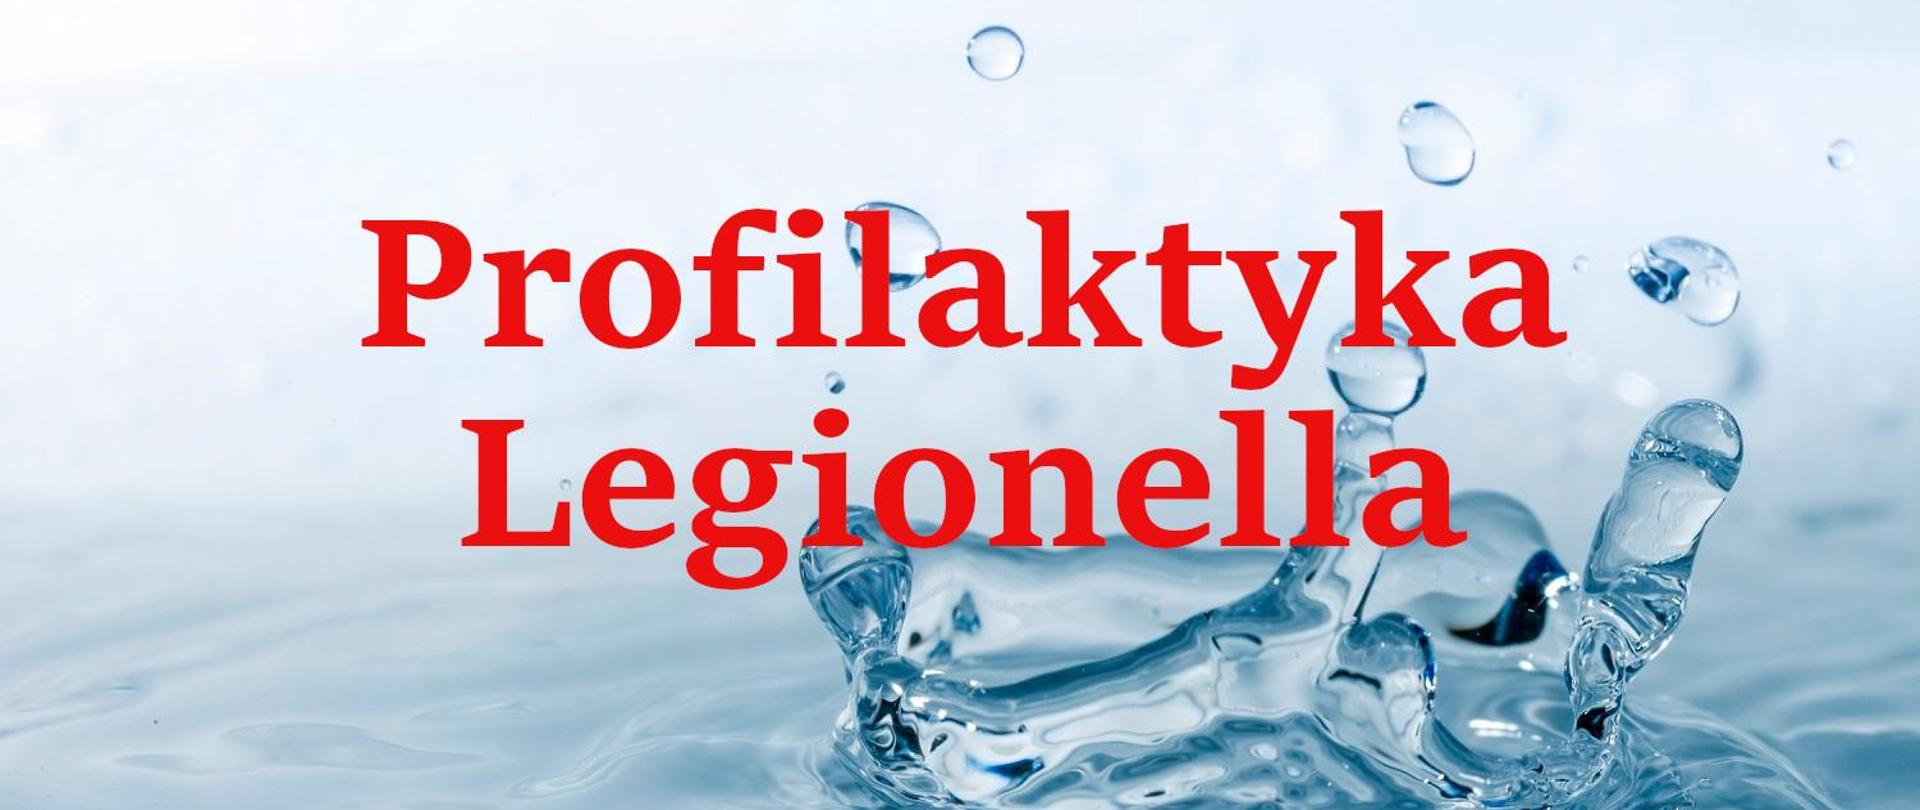 Profilaktyka Legionella